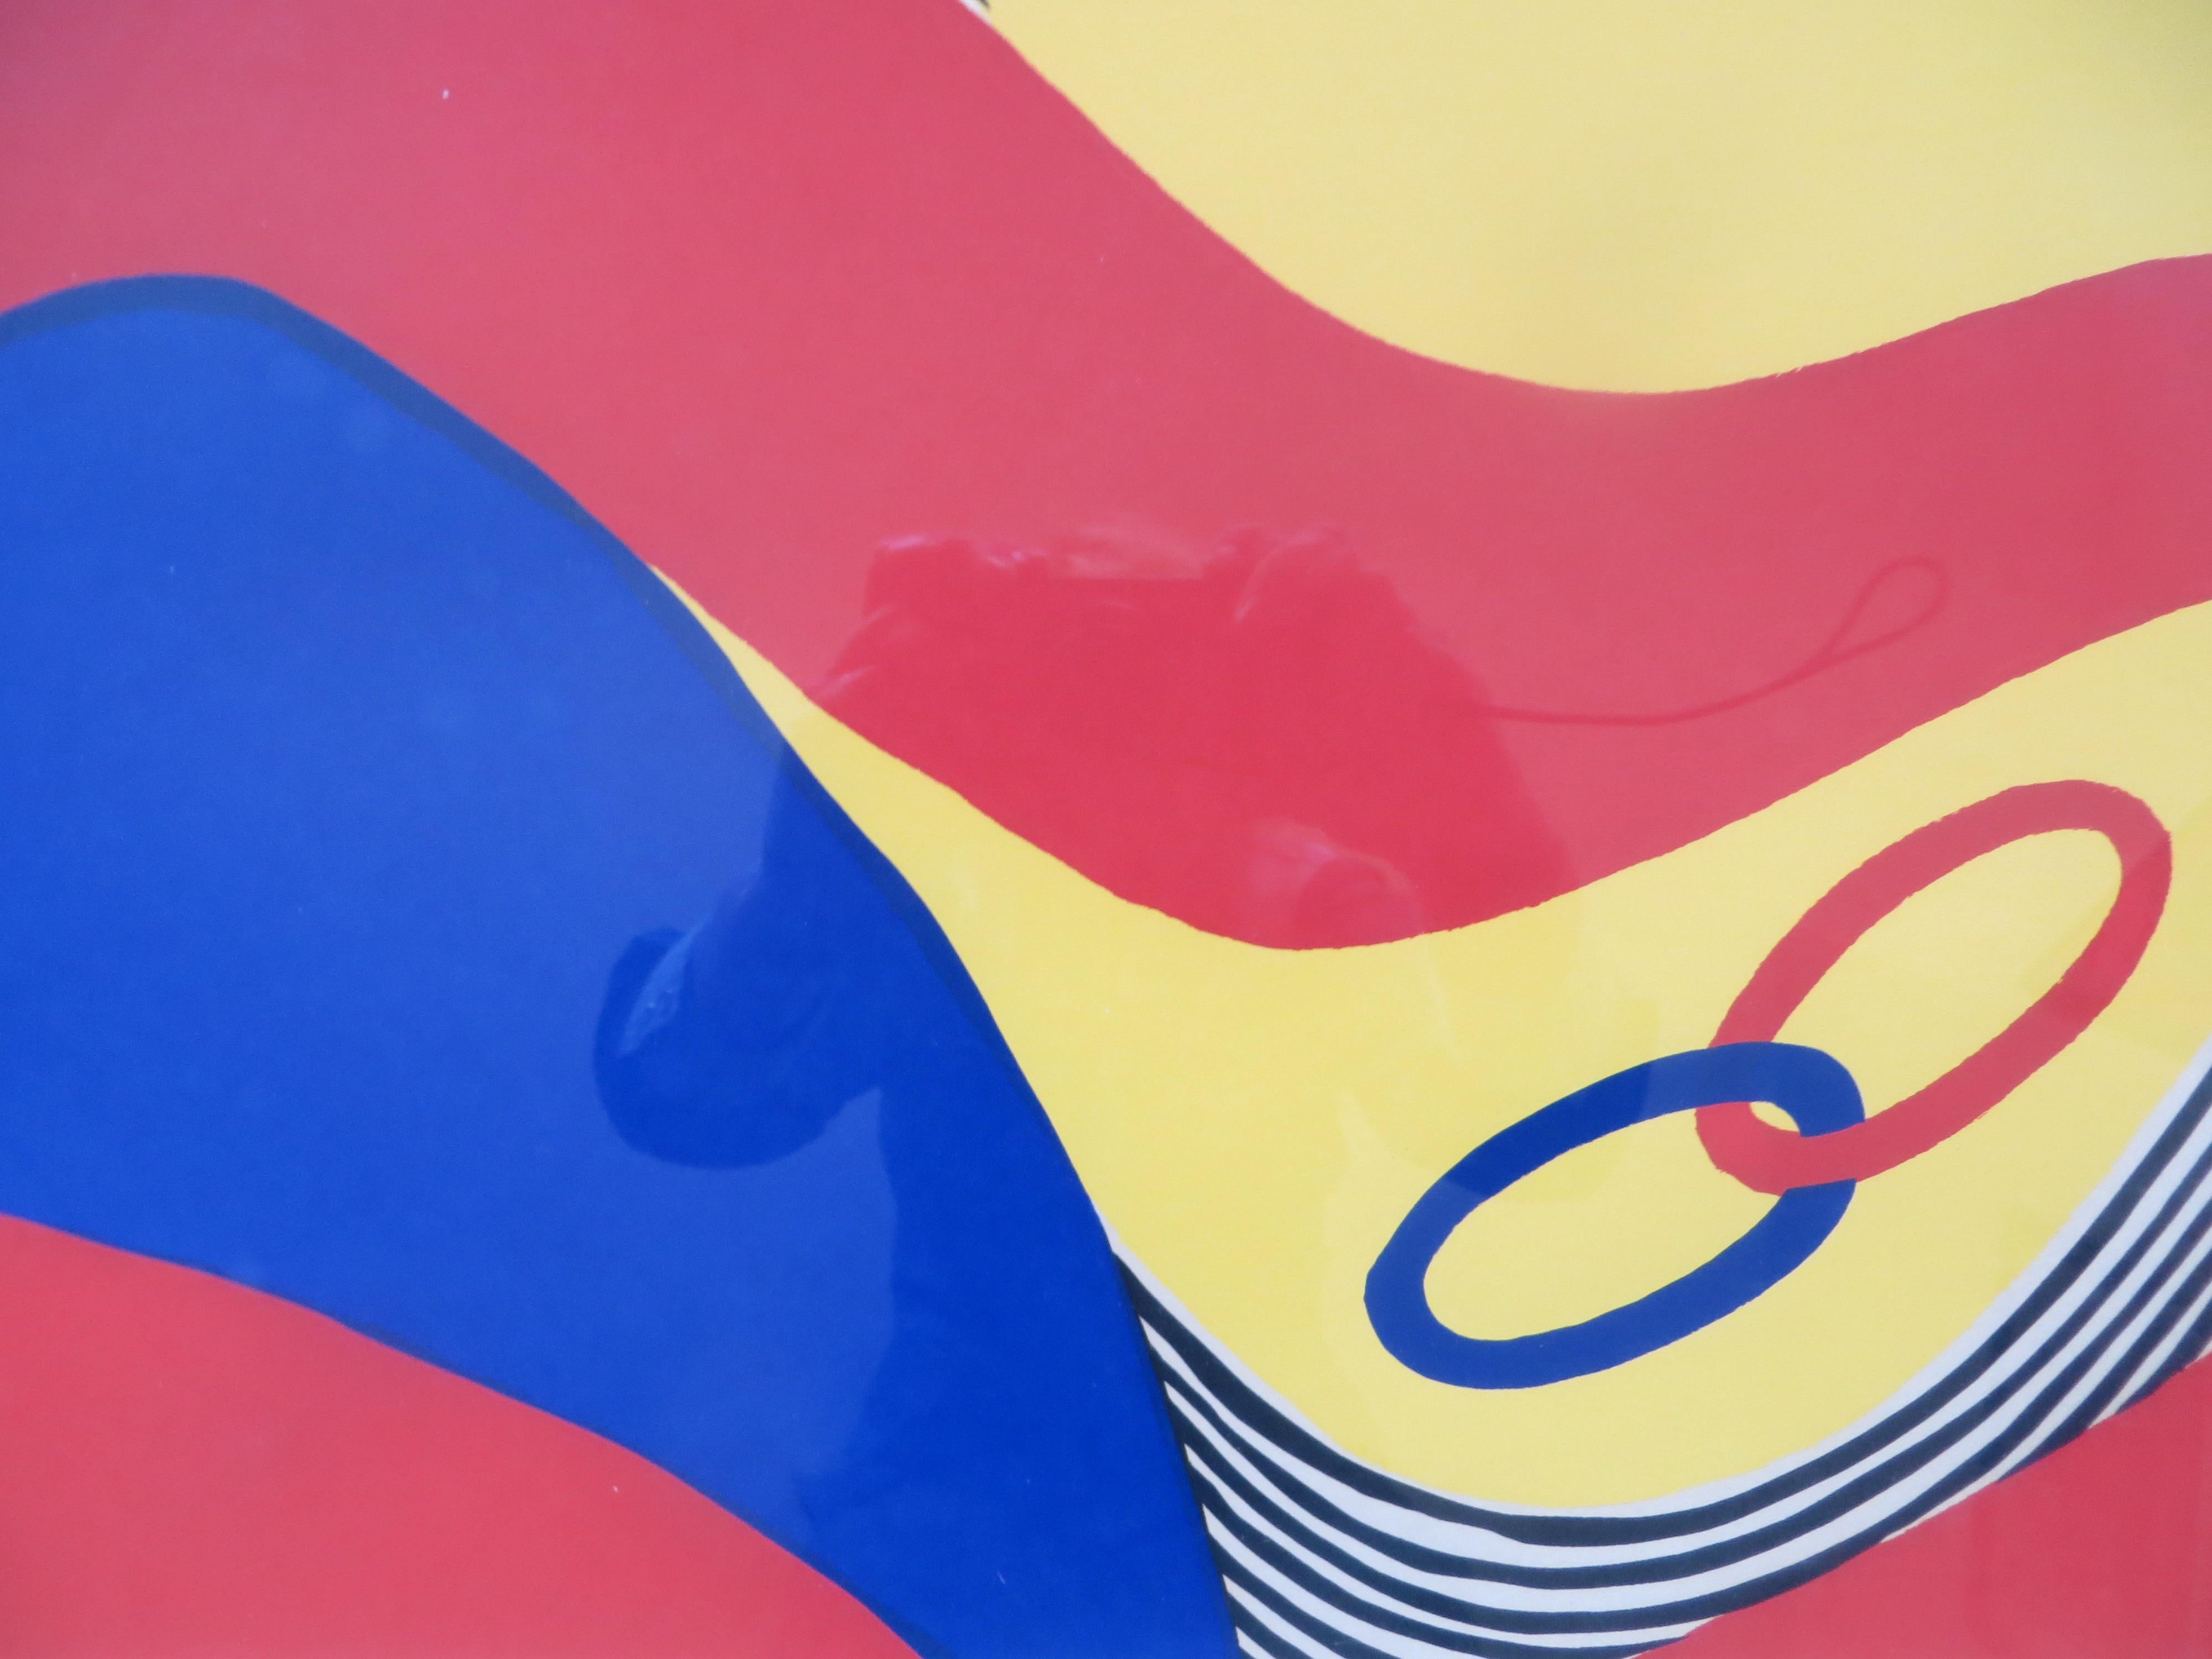  CalderAbstract lithograph Flying colors 1975 limitierte Auflage  (Geometrische Abstraktion), Print, von Alexander Calder